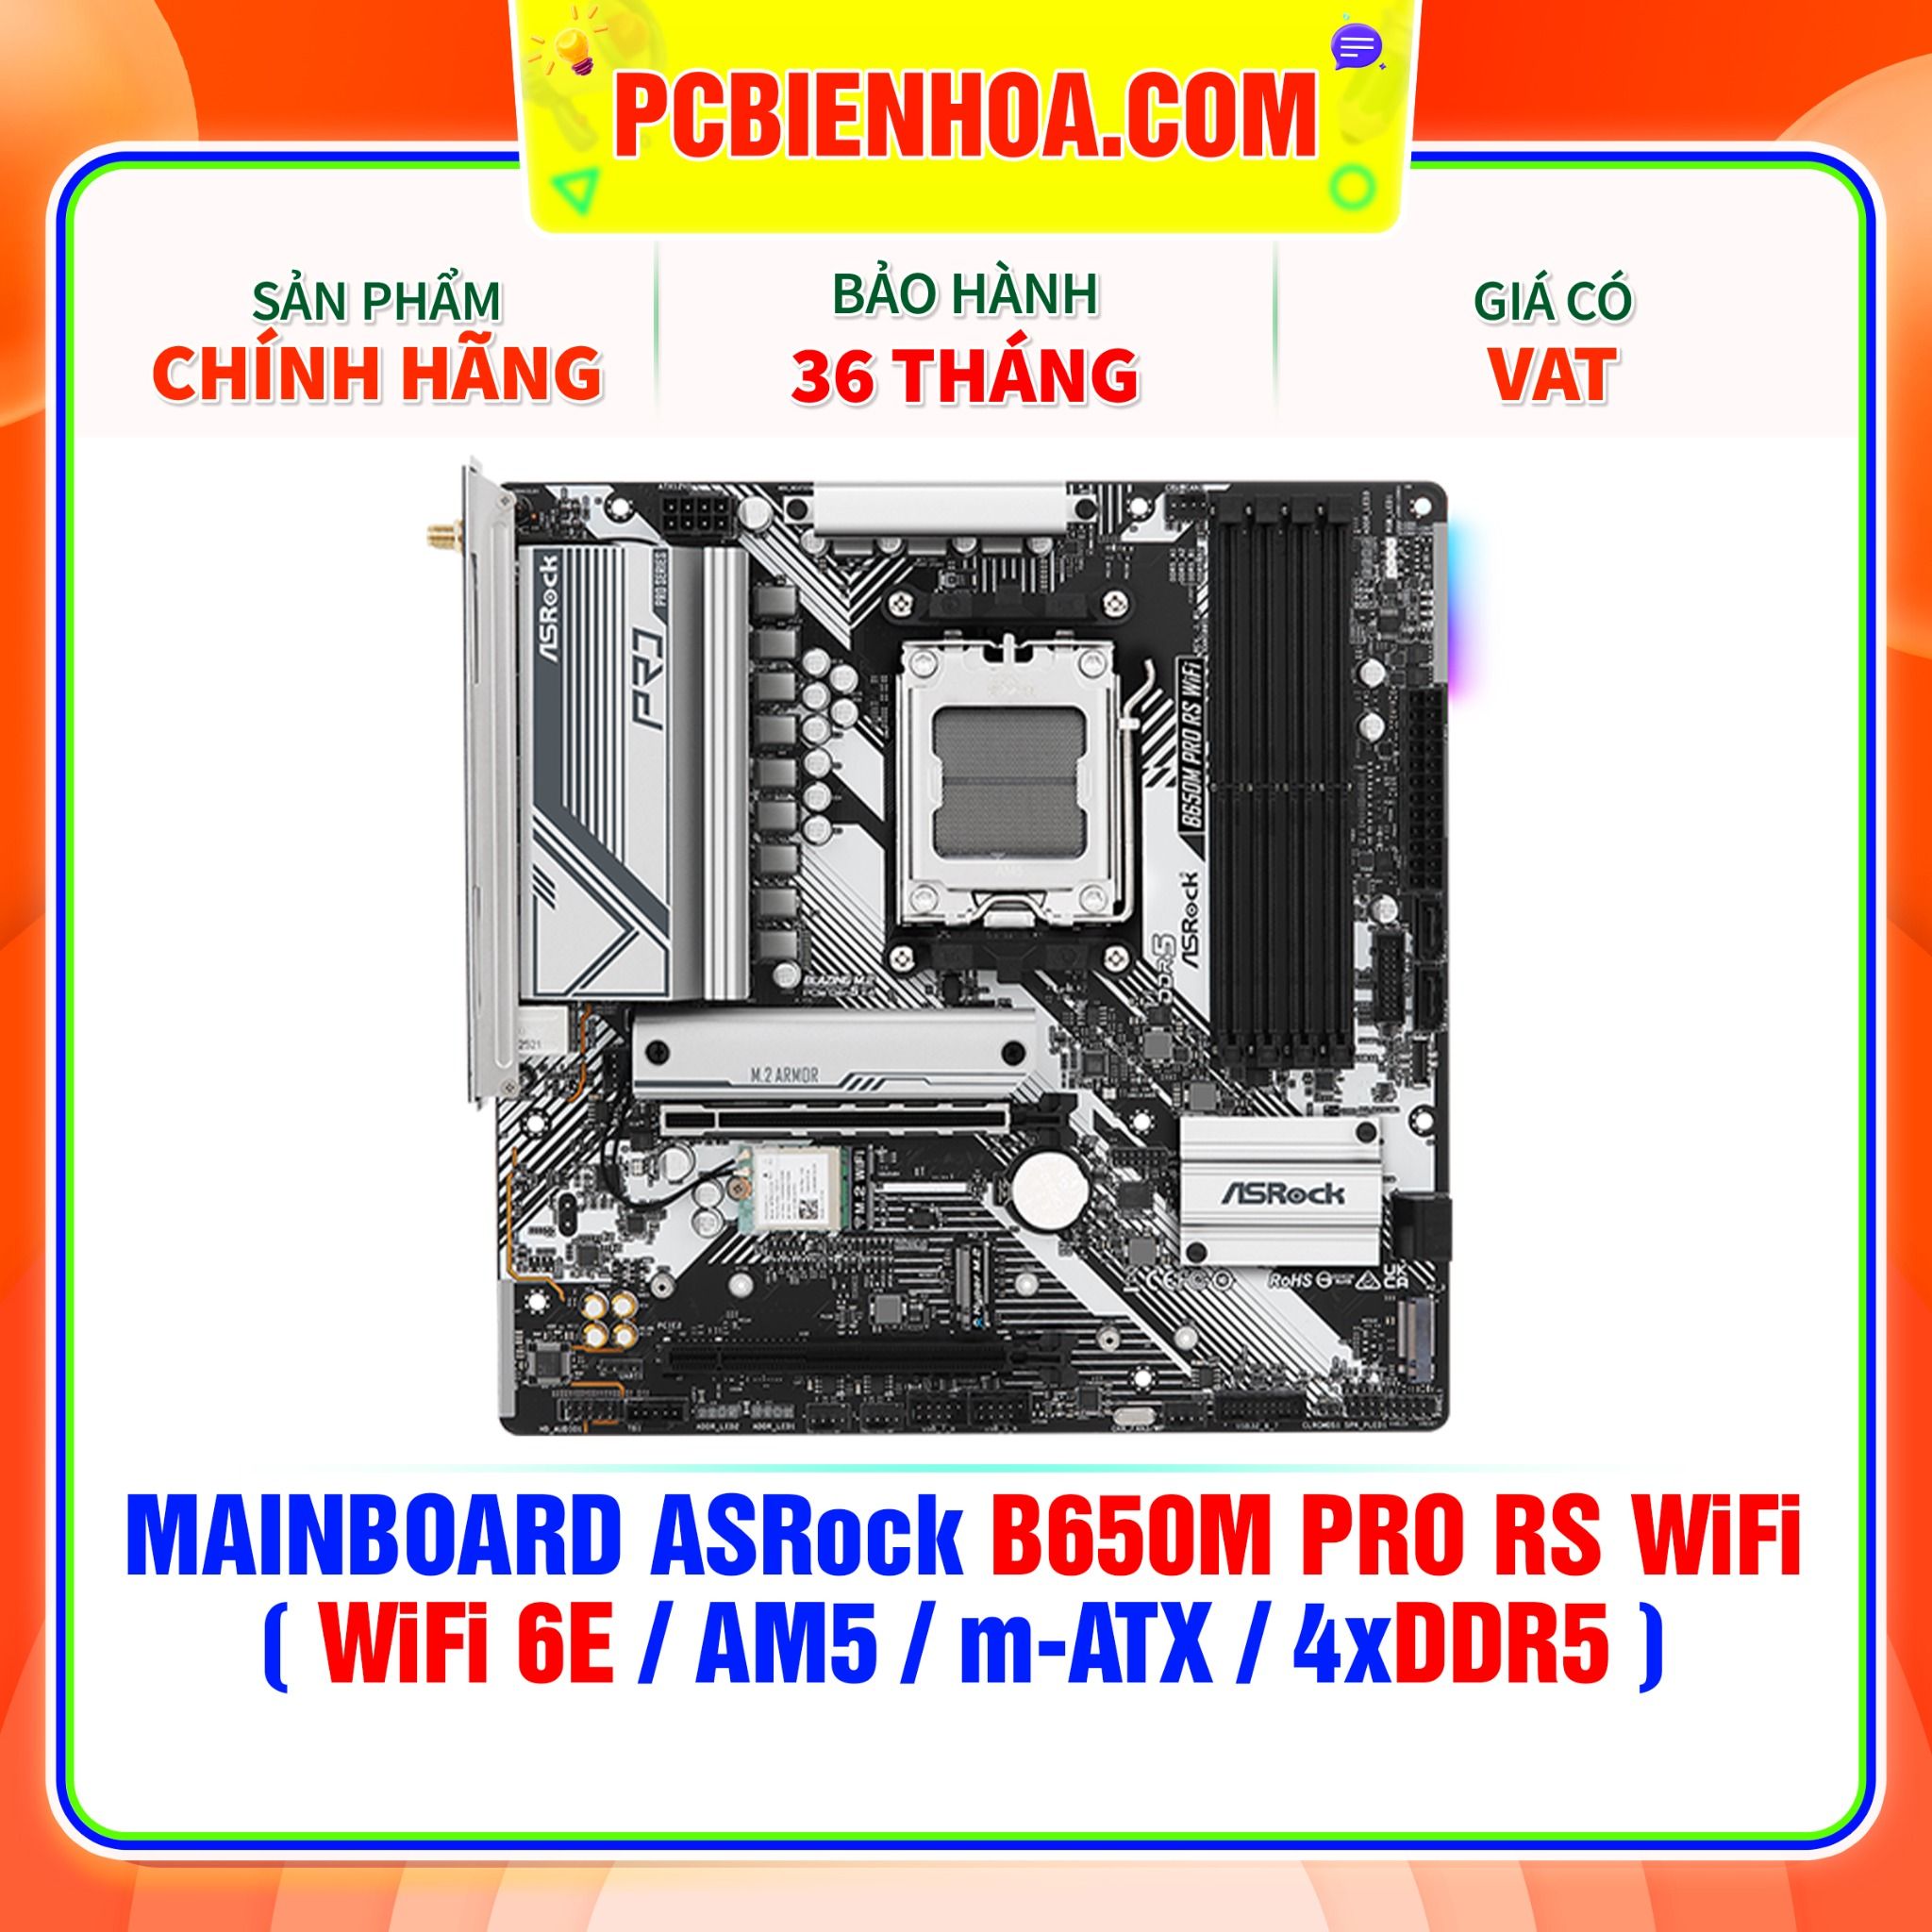  DDR5 - MAINBOARD ASRock B650M PRO RS WiFi ( WiFi 6E / AM5 / m-ATX / 4xDDR5 ) 